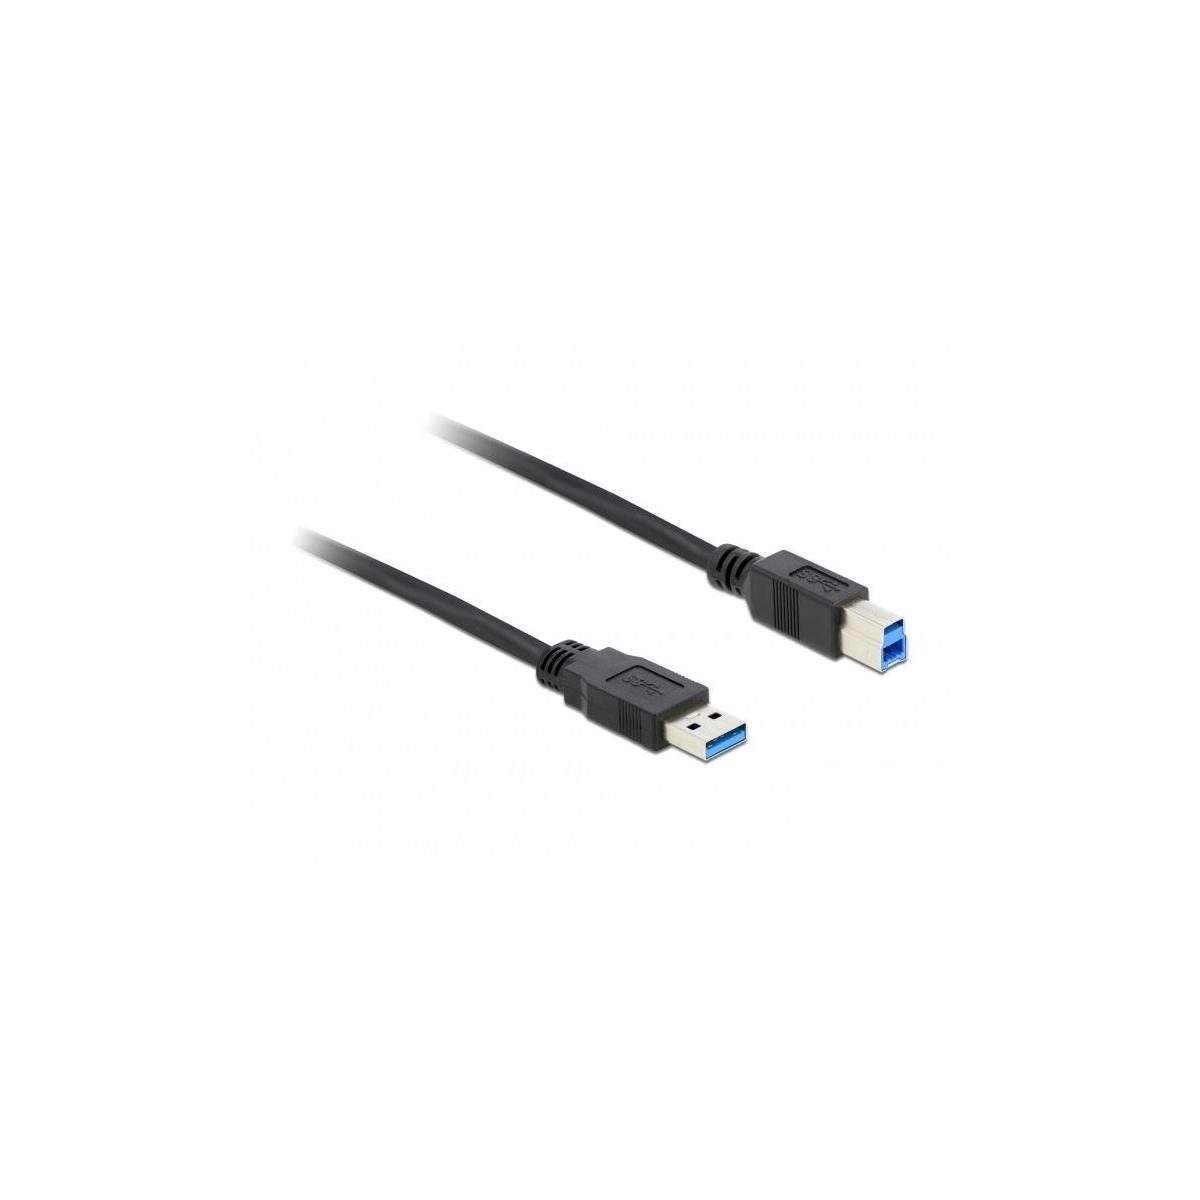 DELOCK DELOCK Kabel USB 3.0 & Peripheriegeräte 3,0m Typ-A<gt/> Kabel, Schwarz Typ-B Zubehör & USB